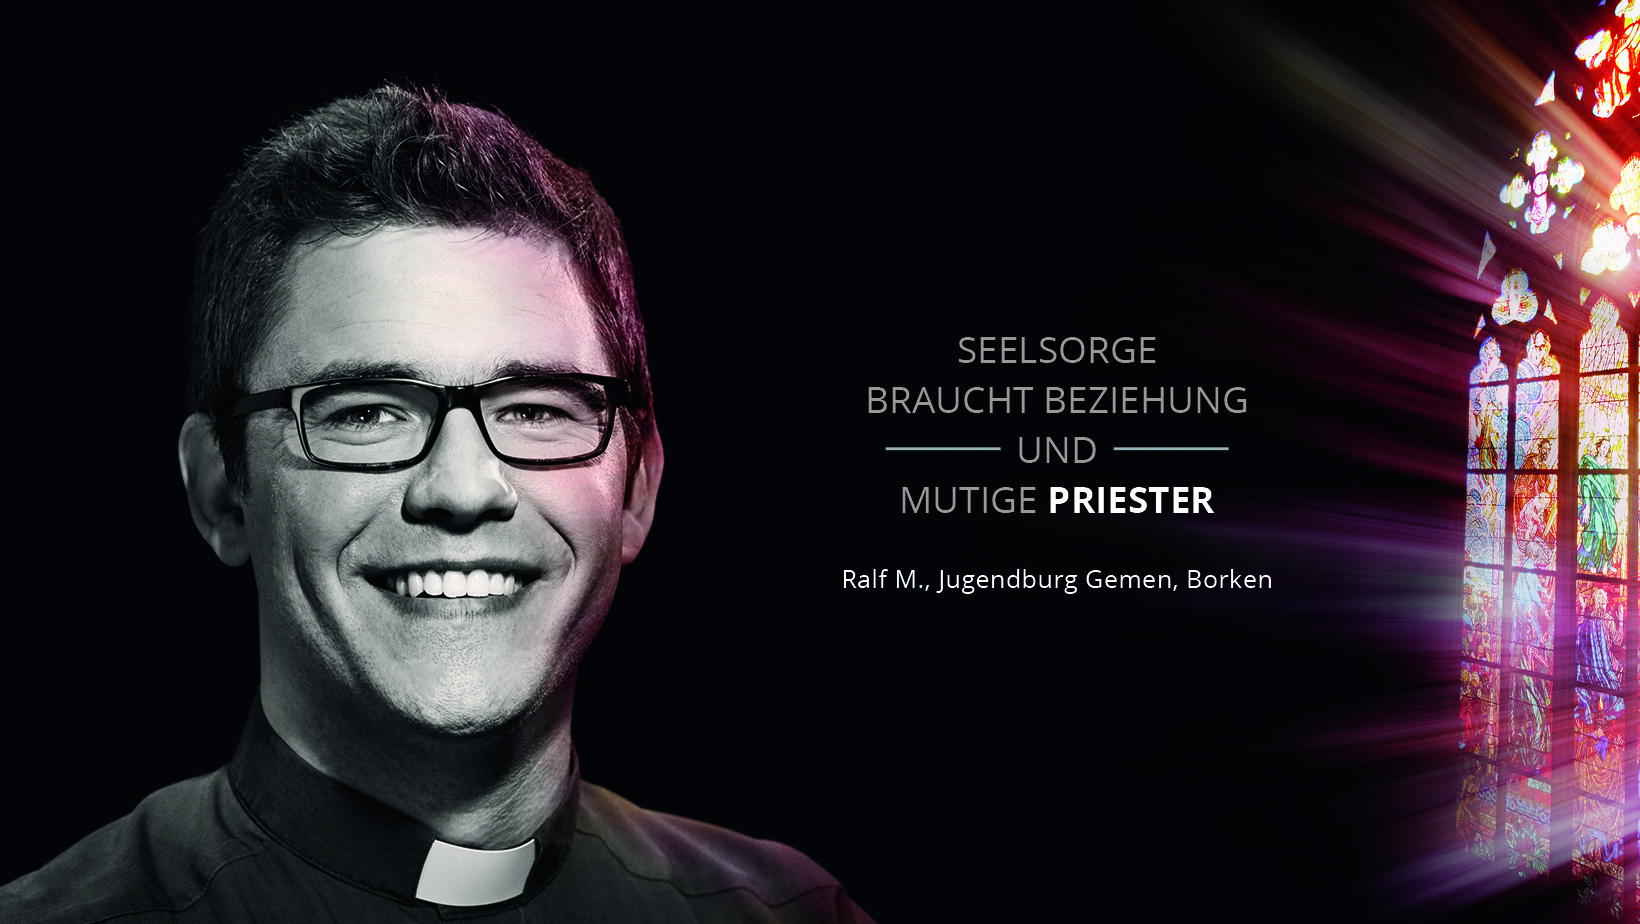 Porträtfoto des Priesters Ralf M. mit dem Slogan "Seelsorge braucht Beziehung und mutige Priester"